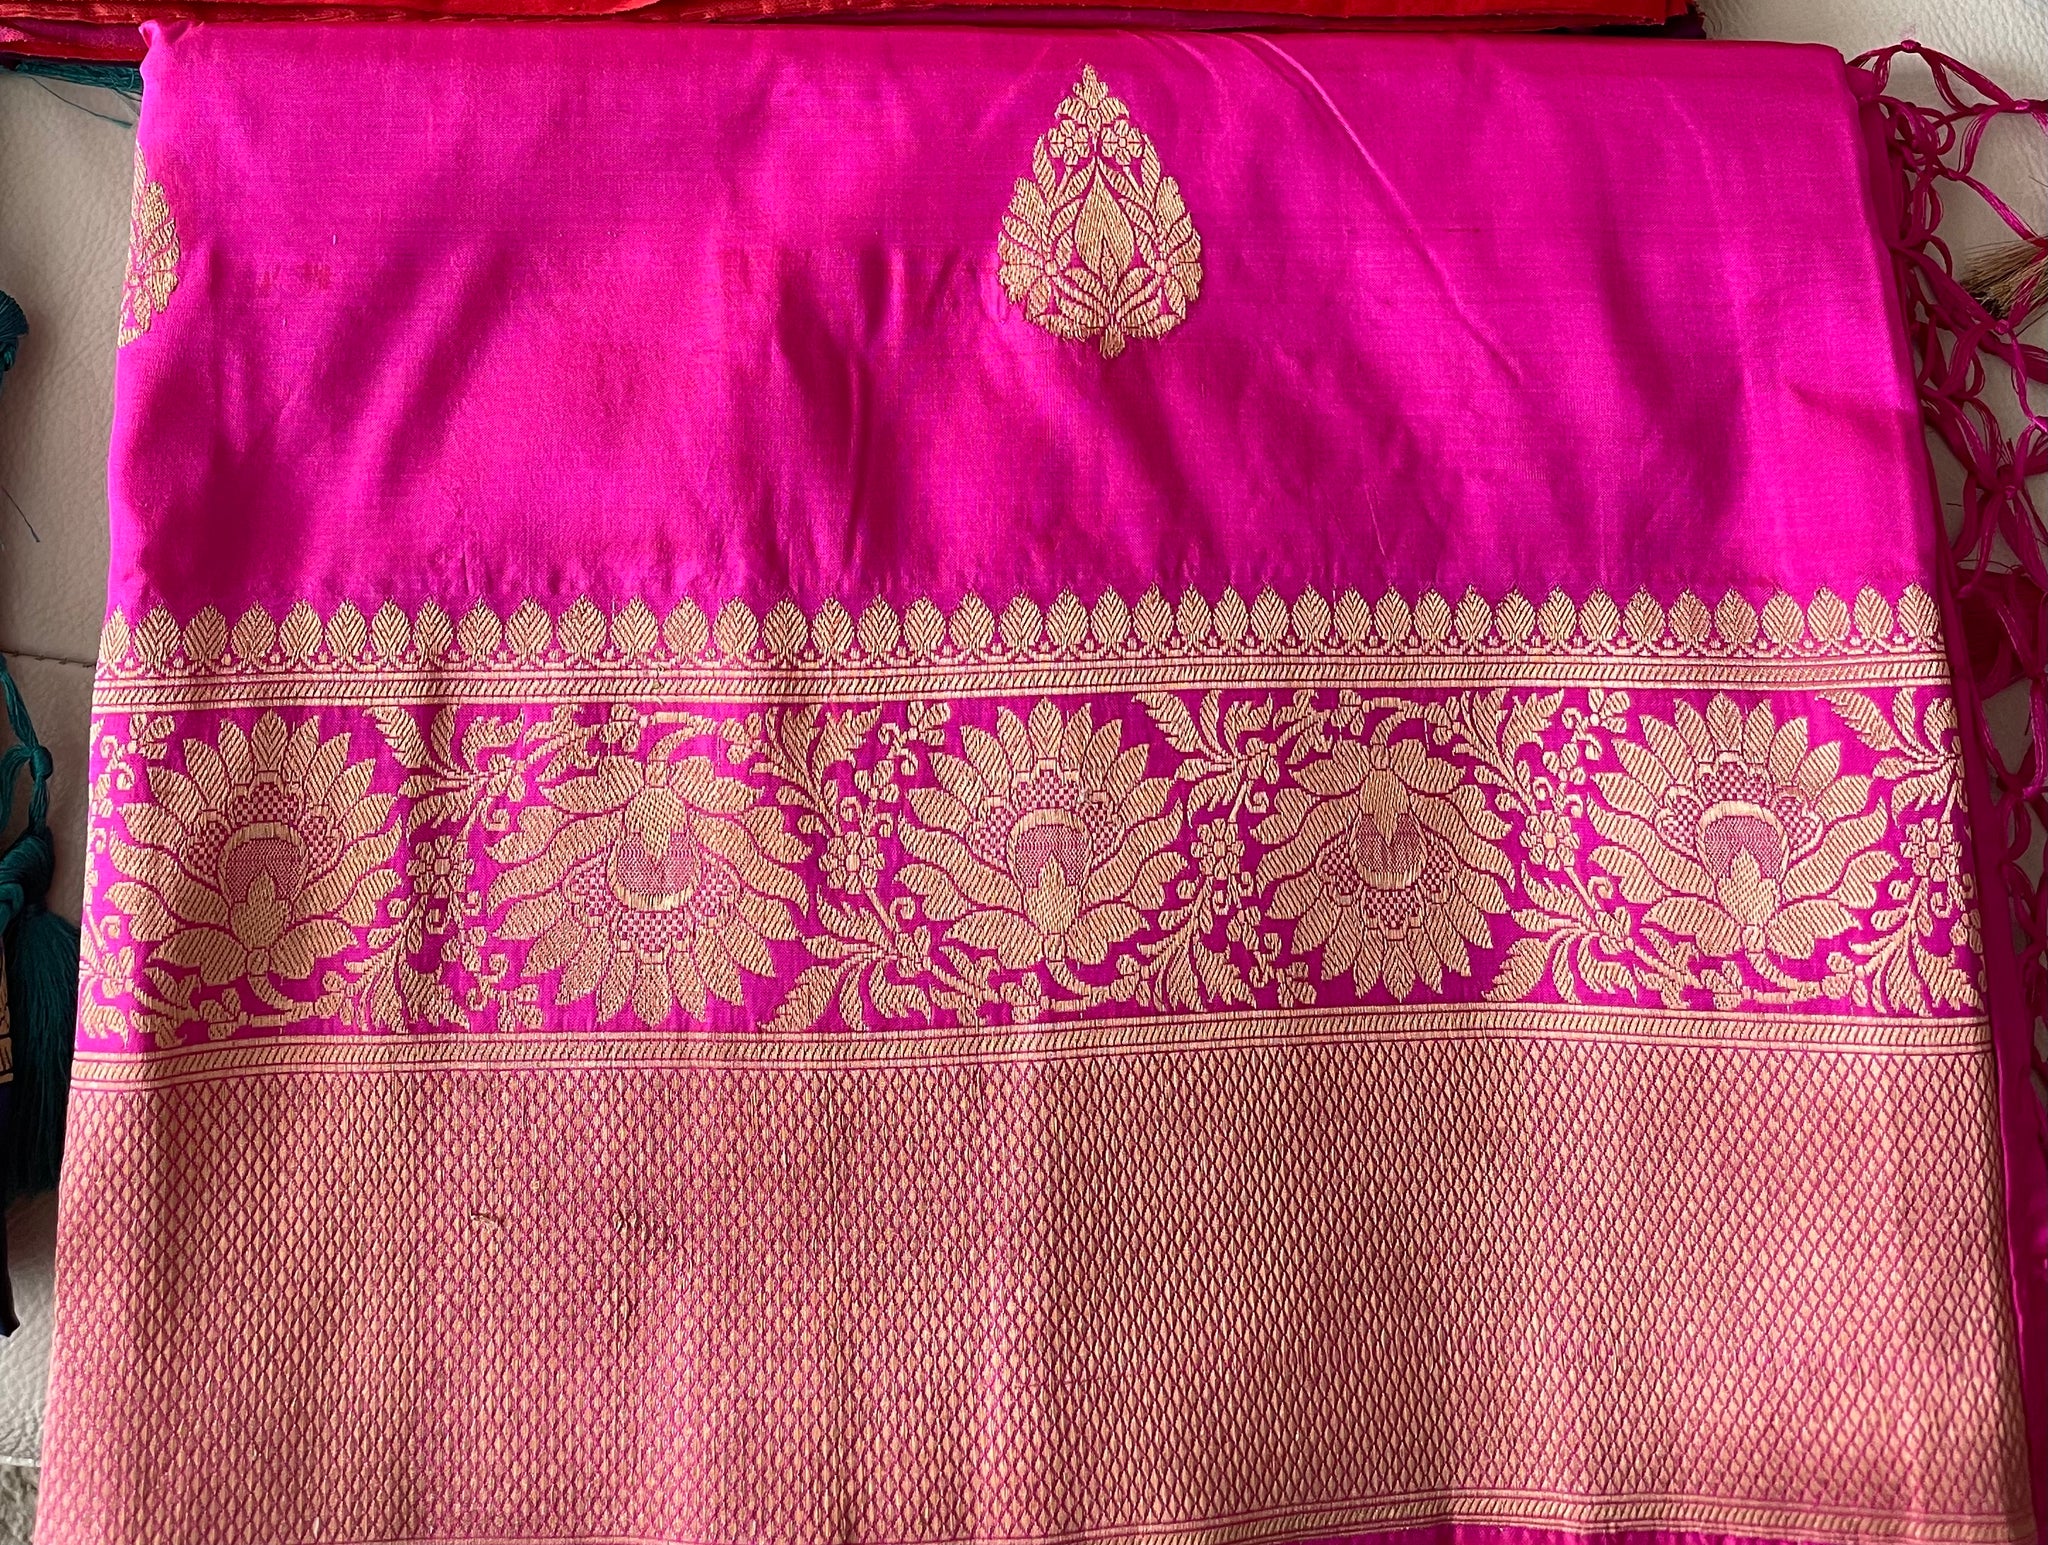 Rani Hot Pink Soft Banarasi Pattu Katan Silk Saree with Zari weaves with Pink Border